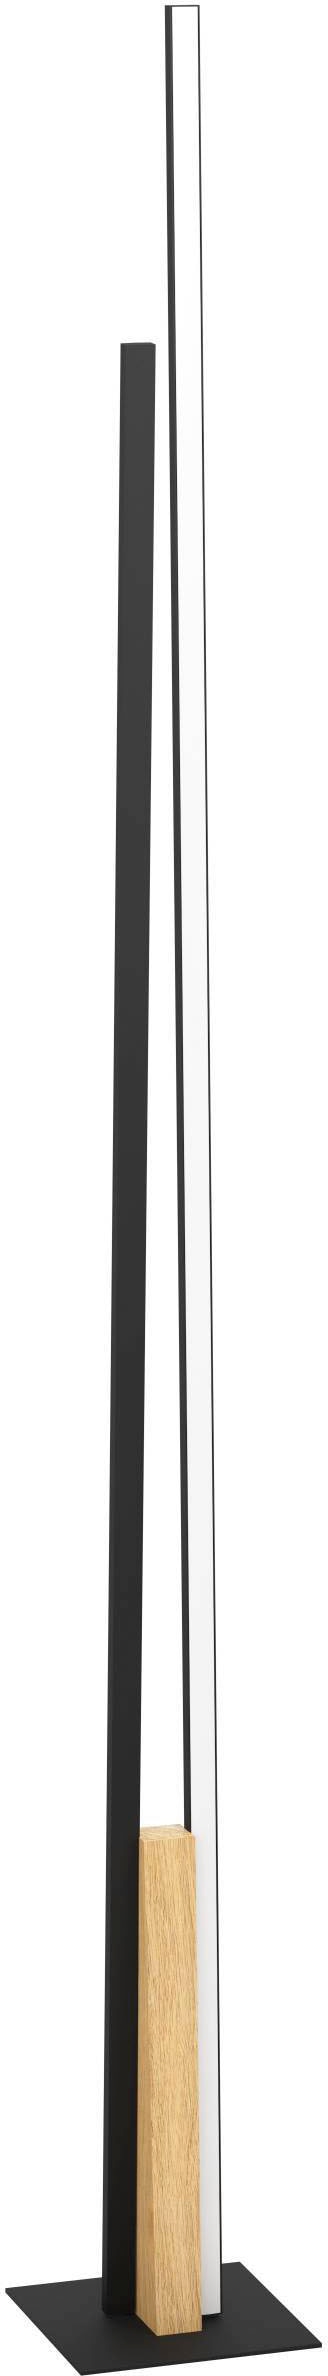 Stehlampe »PANAGRIA«, Stehleuchte in schwarz und braun aus Alu, Stahl, Holz